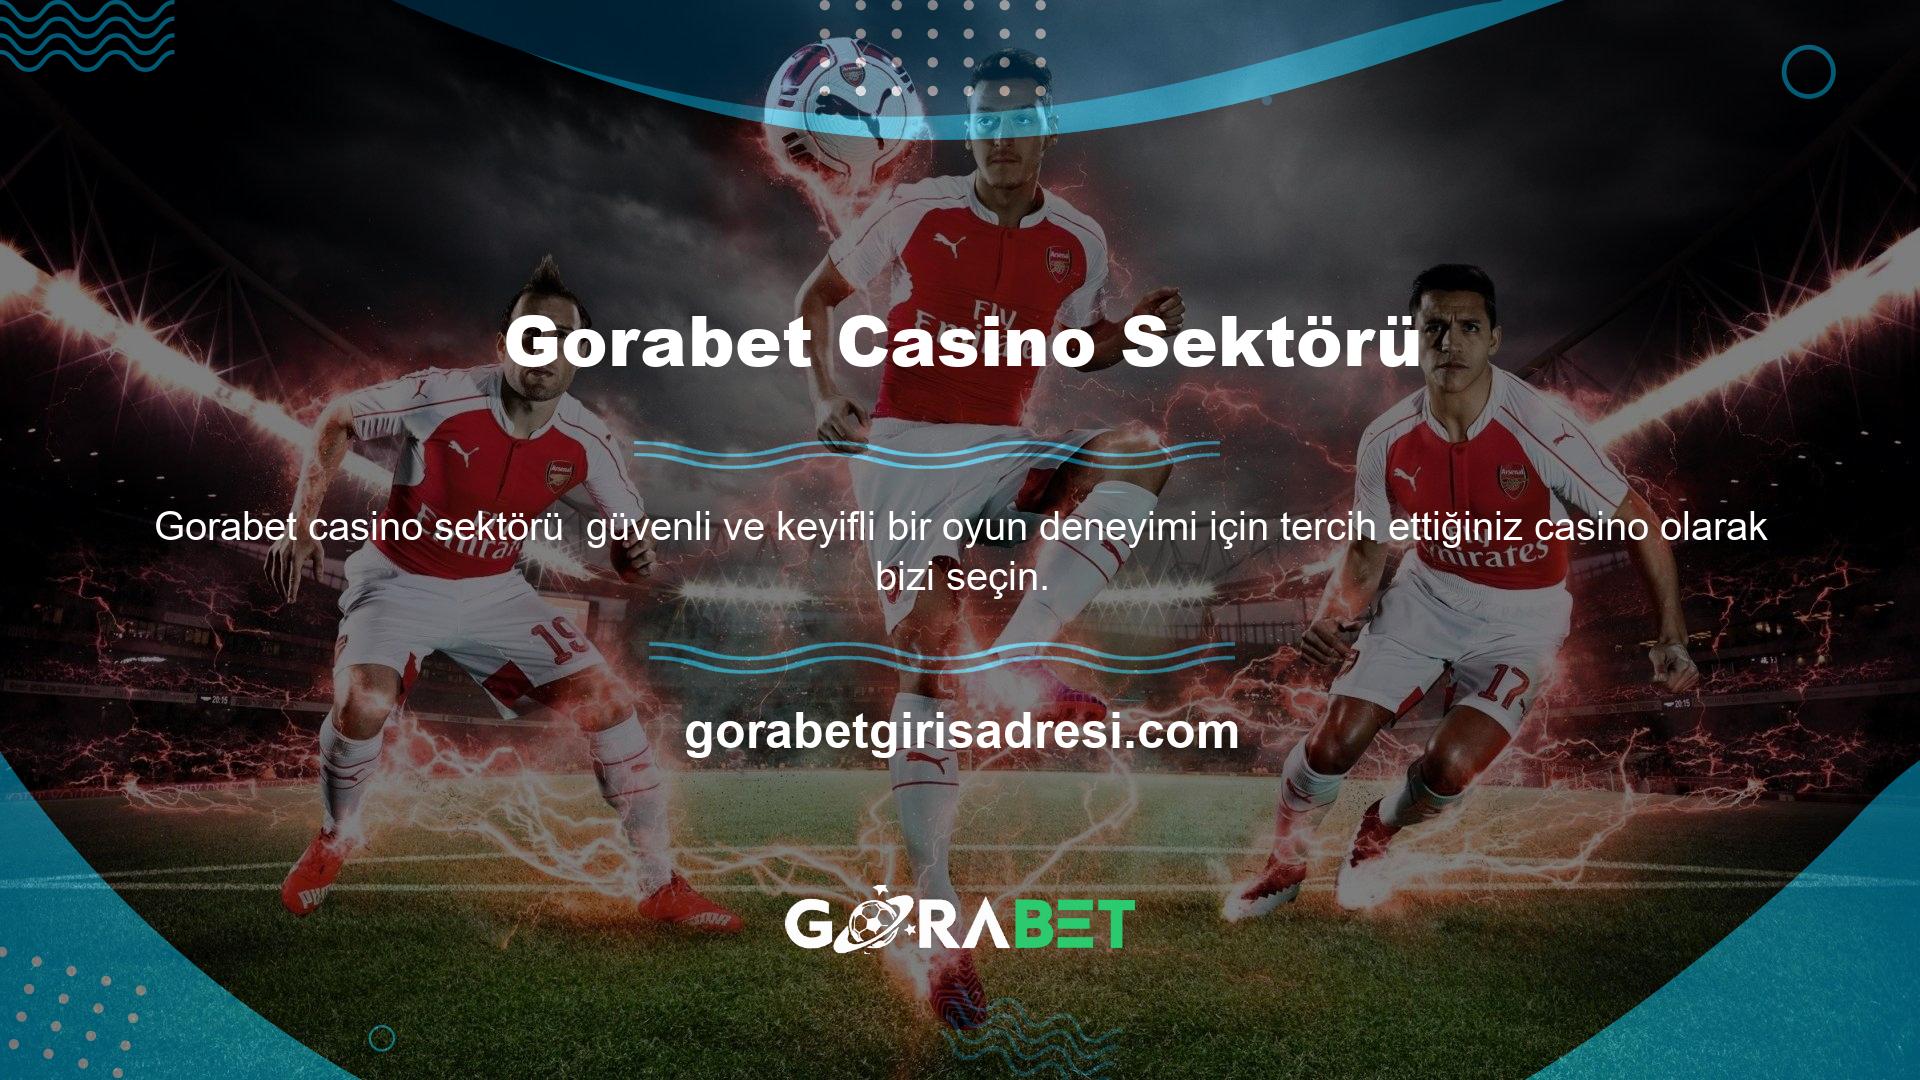 En saygın çevrimiçi casino olan Gorabet, sürekli olarak en yüksek kalitede hizmeti sunmaktadır